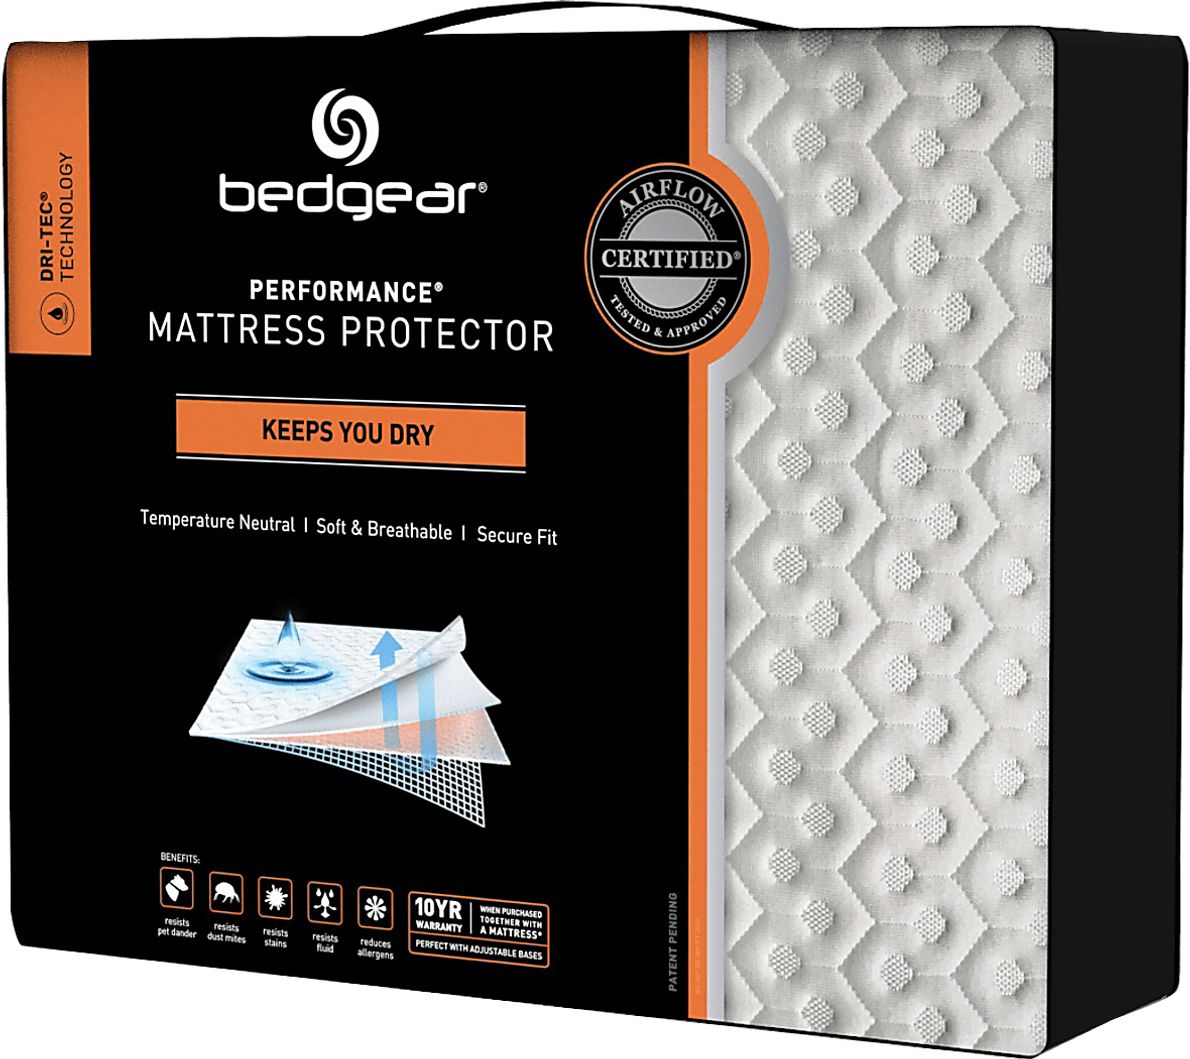 Performance Bedgear Dri-Tec 5.0 Twin Mattress Protector